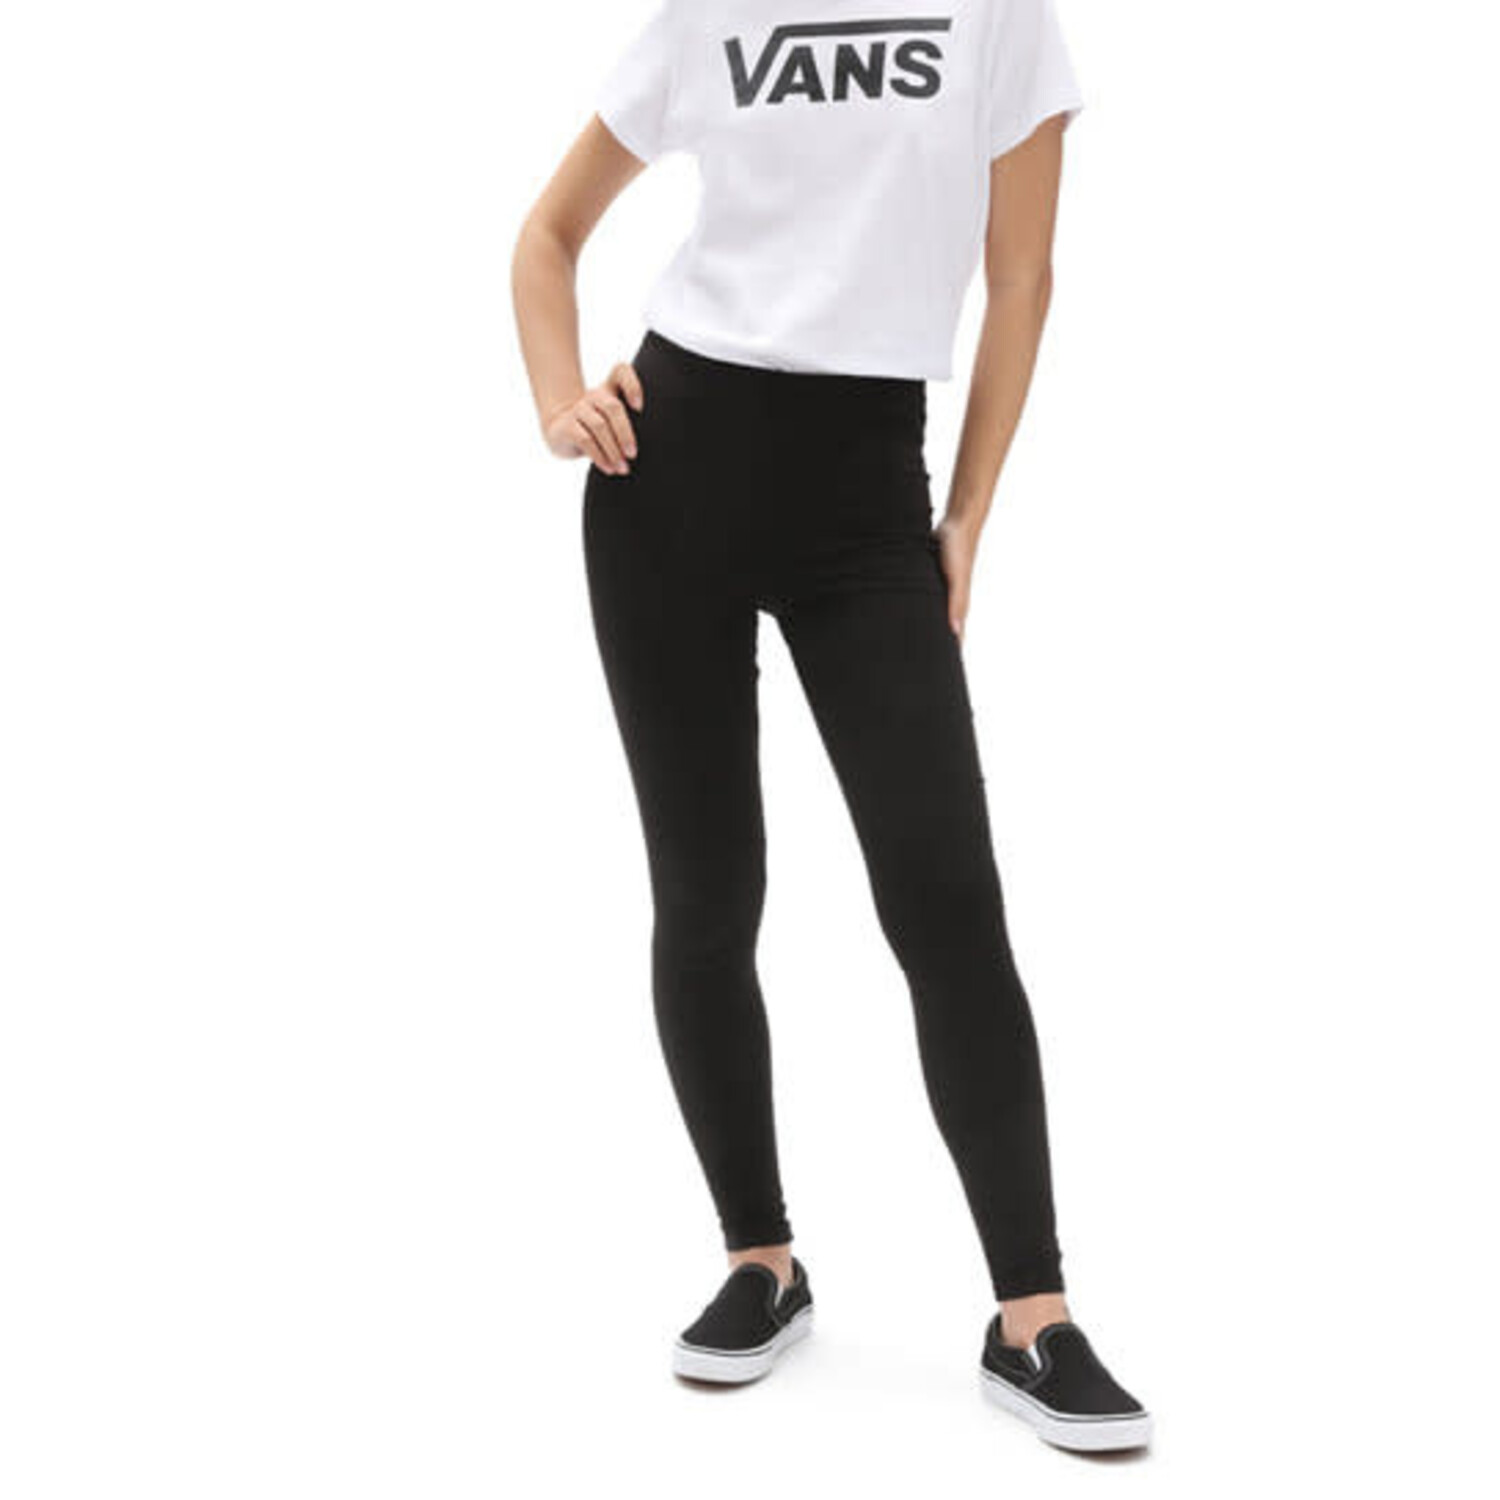 Shop Women's Vans Leggings up to 55% Off